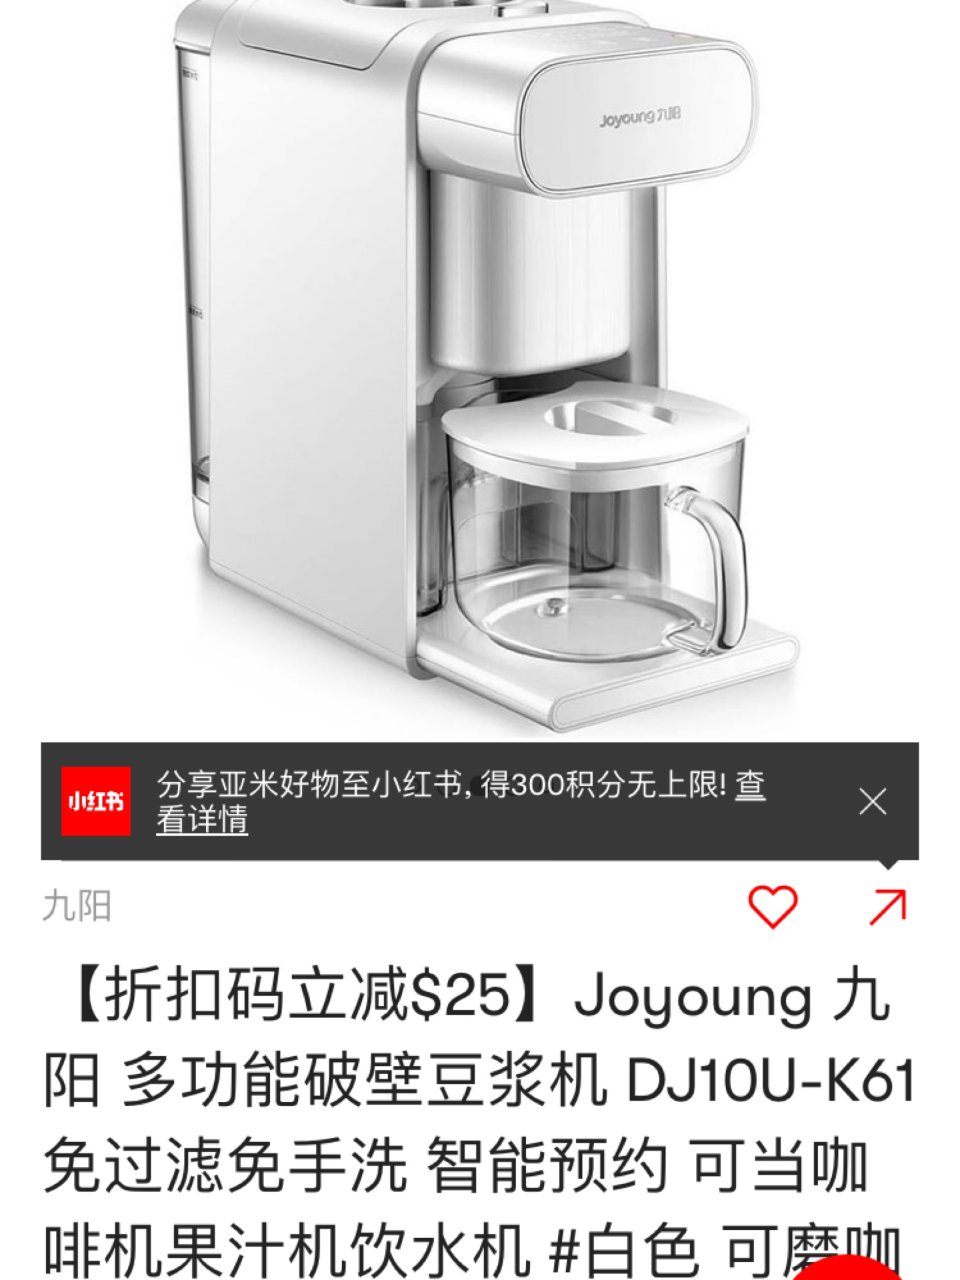 YAMI 亚米,DJ10U-K61 多功能破壁豆浆机